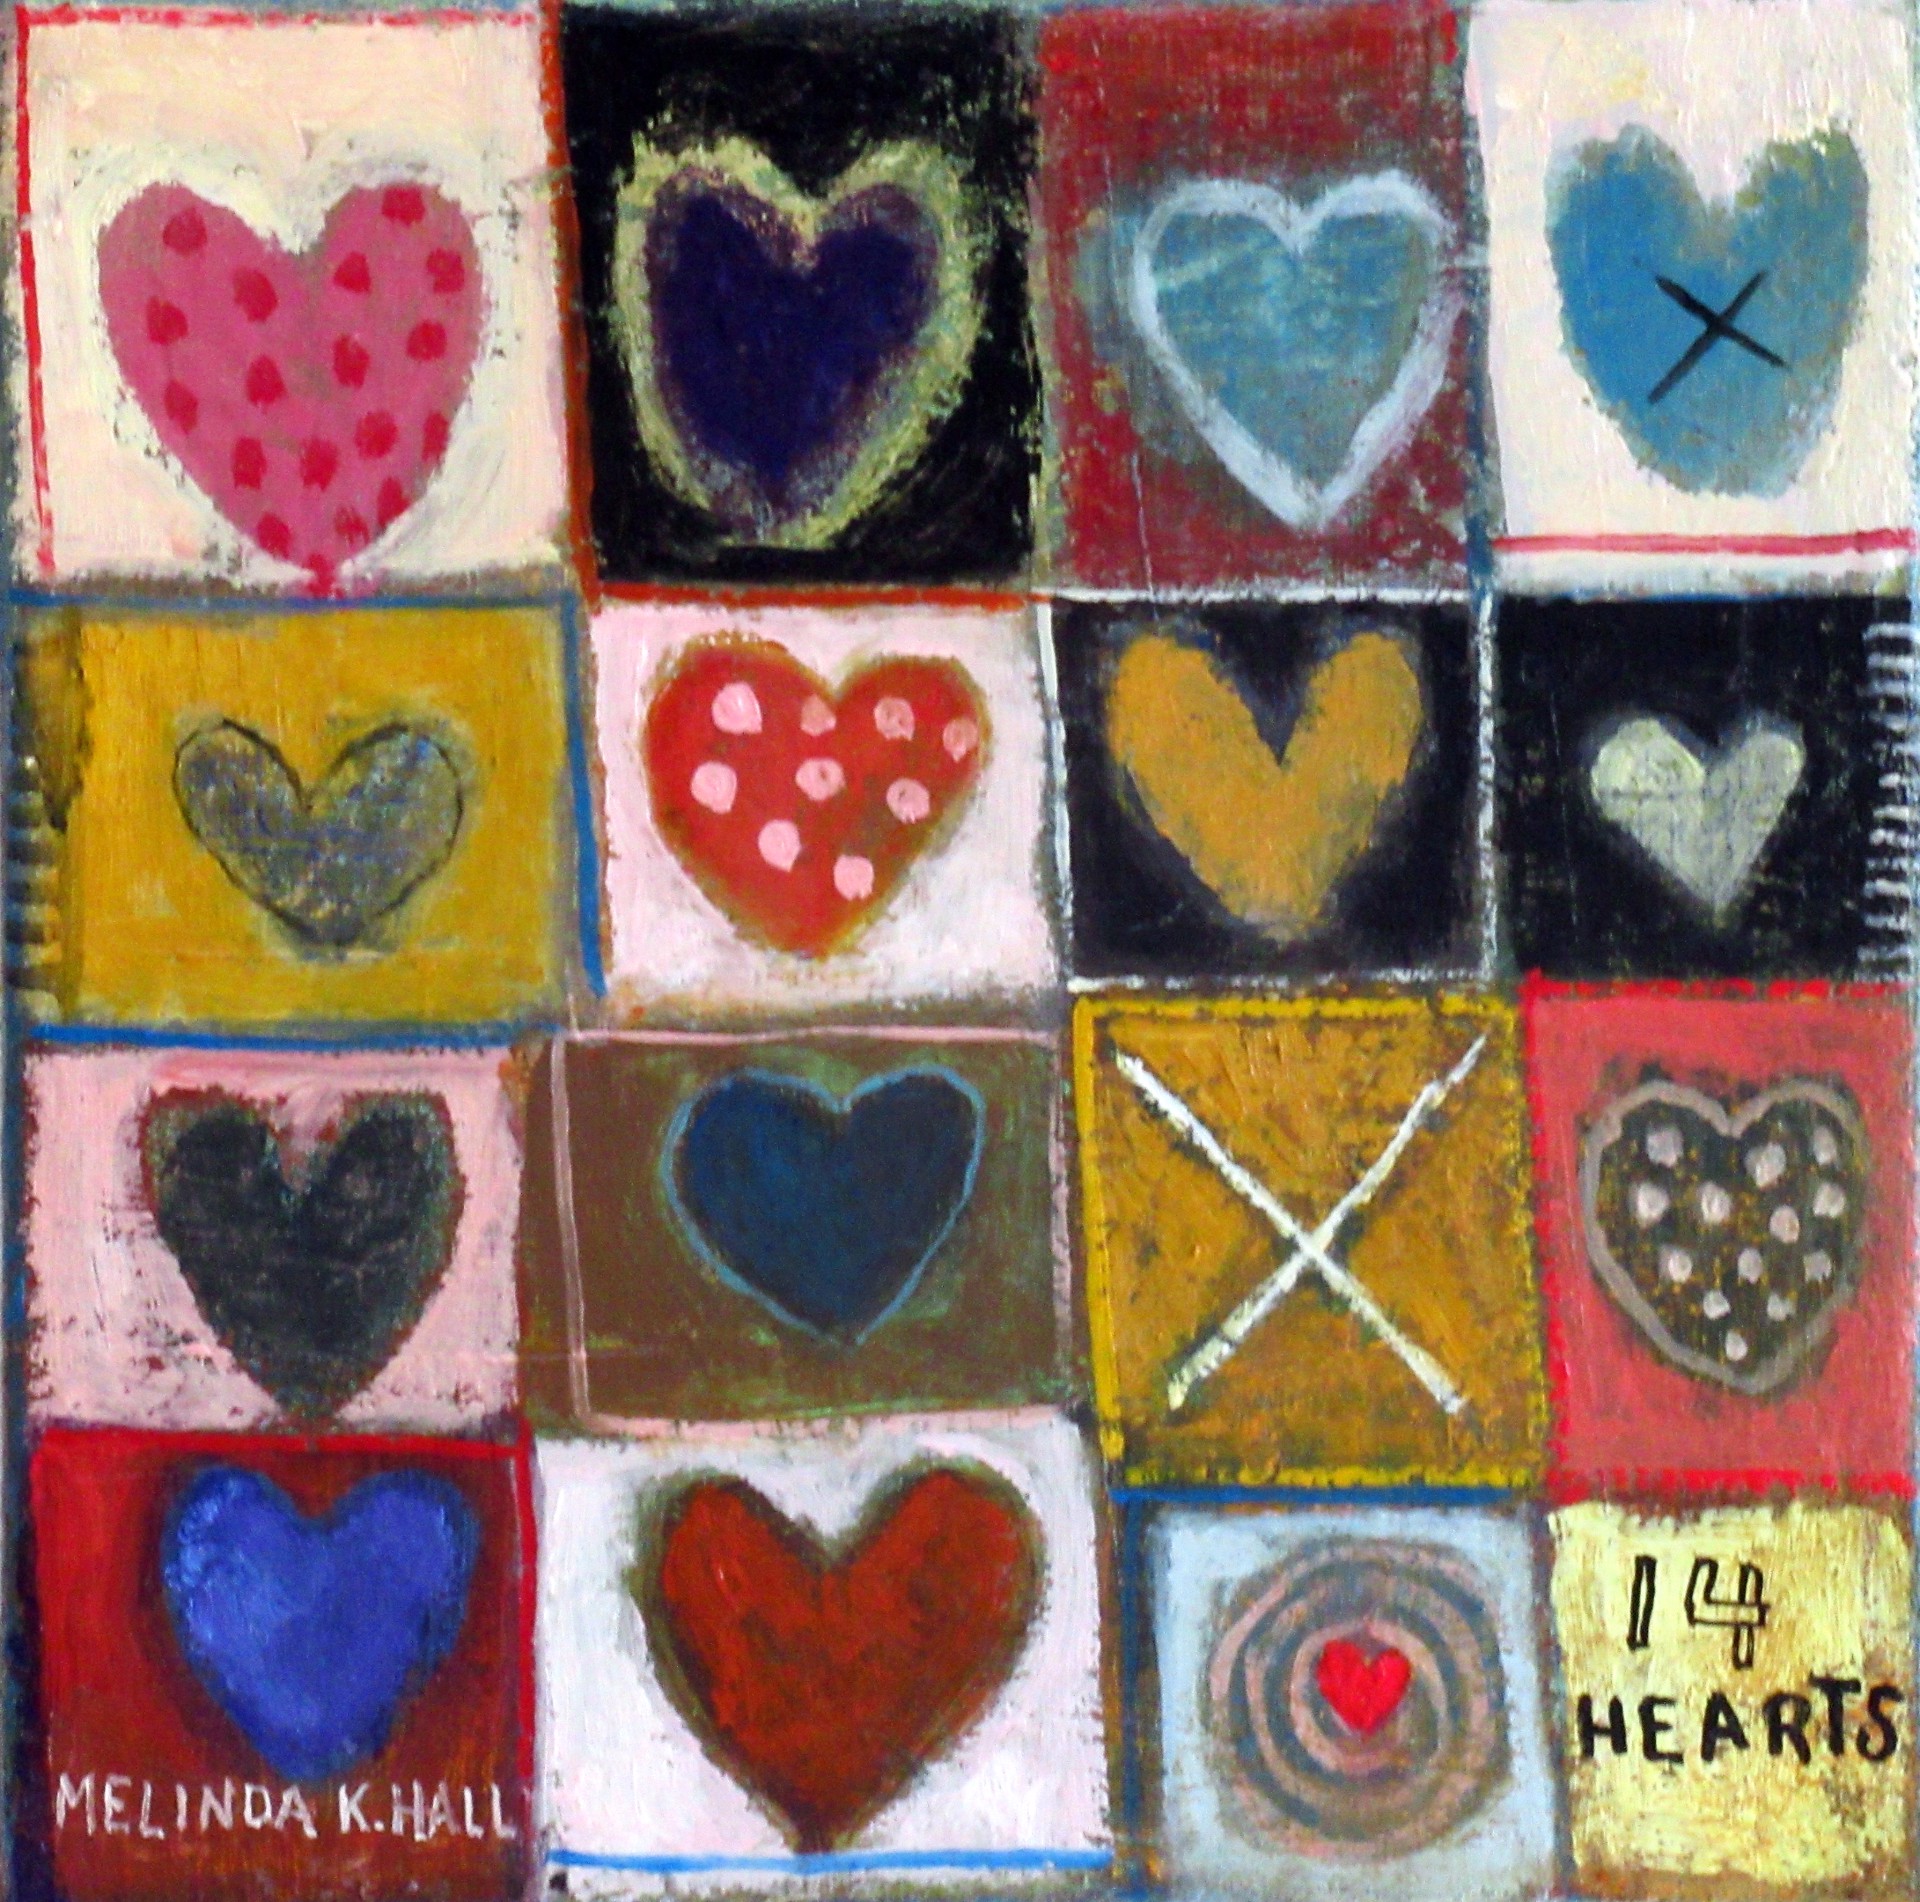 14 Hearts by Melinda K. Hall